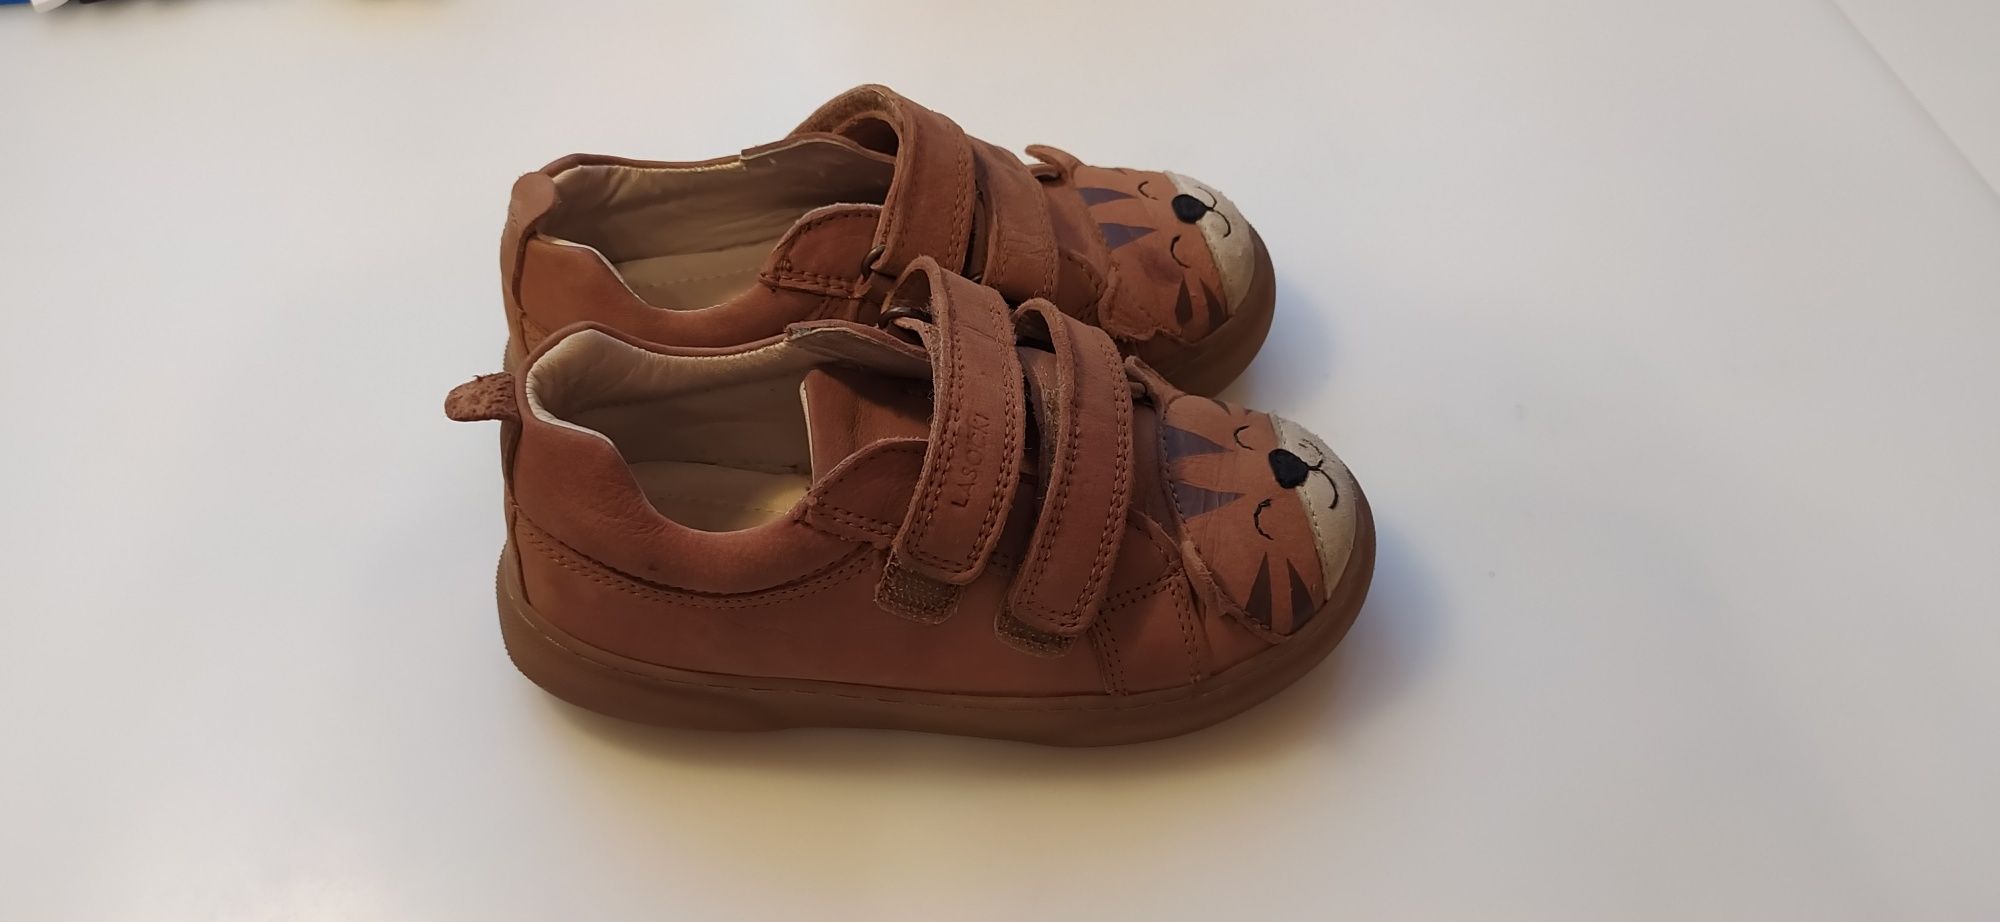 Lasocki Kids buty wiosenne skórzane na rzepy r. 26 mało używane